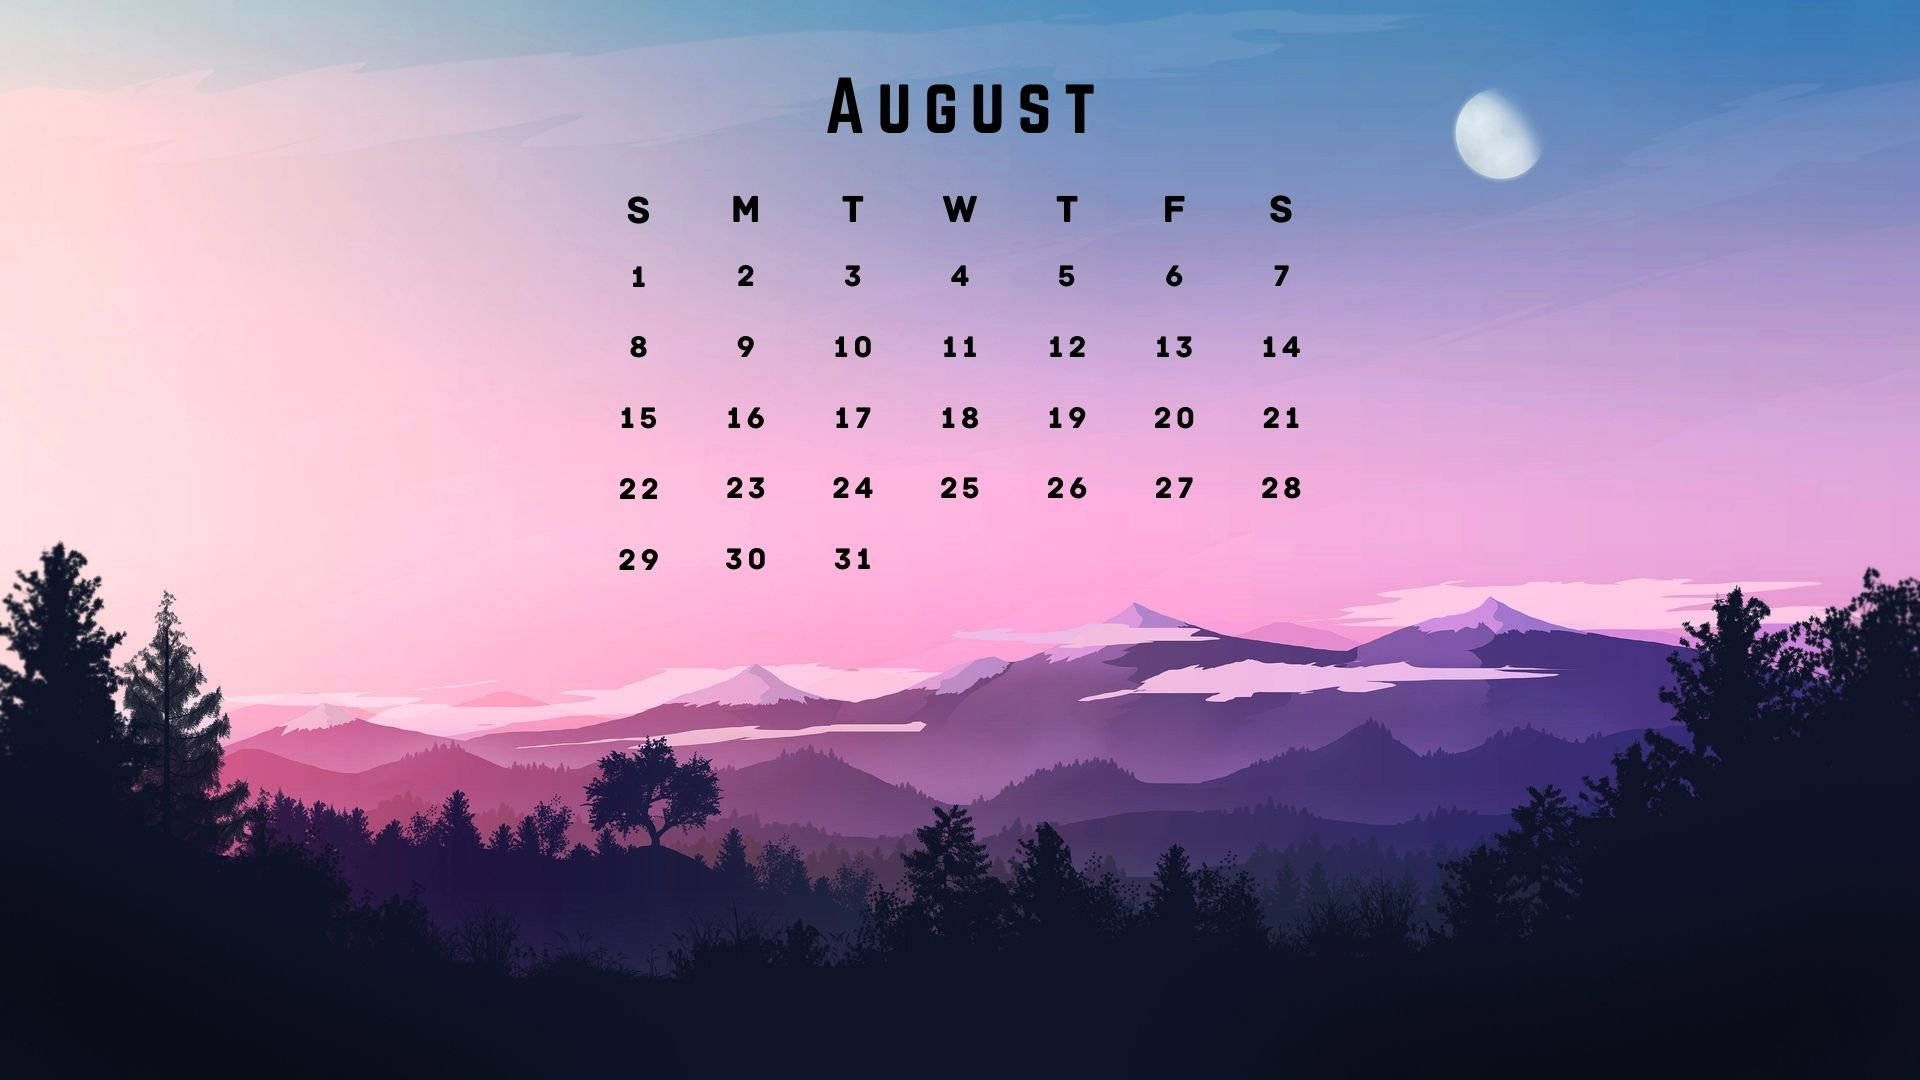 August 2021 Planning Calendar Wallpaper